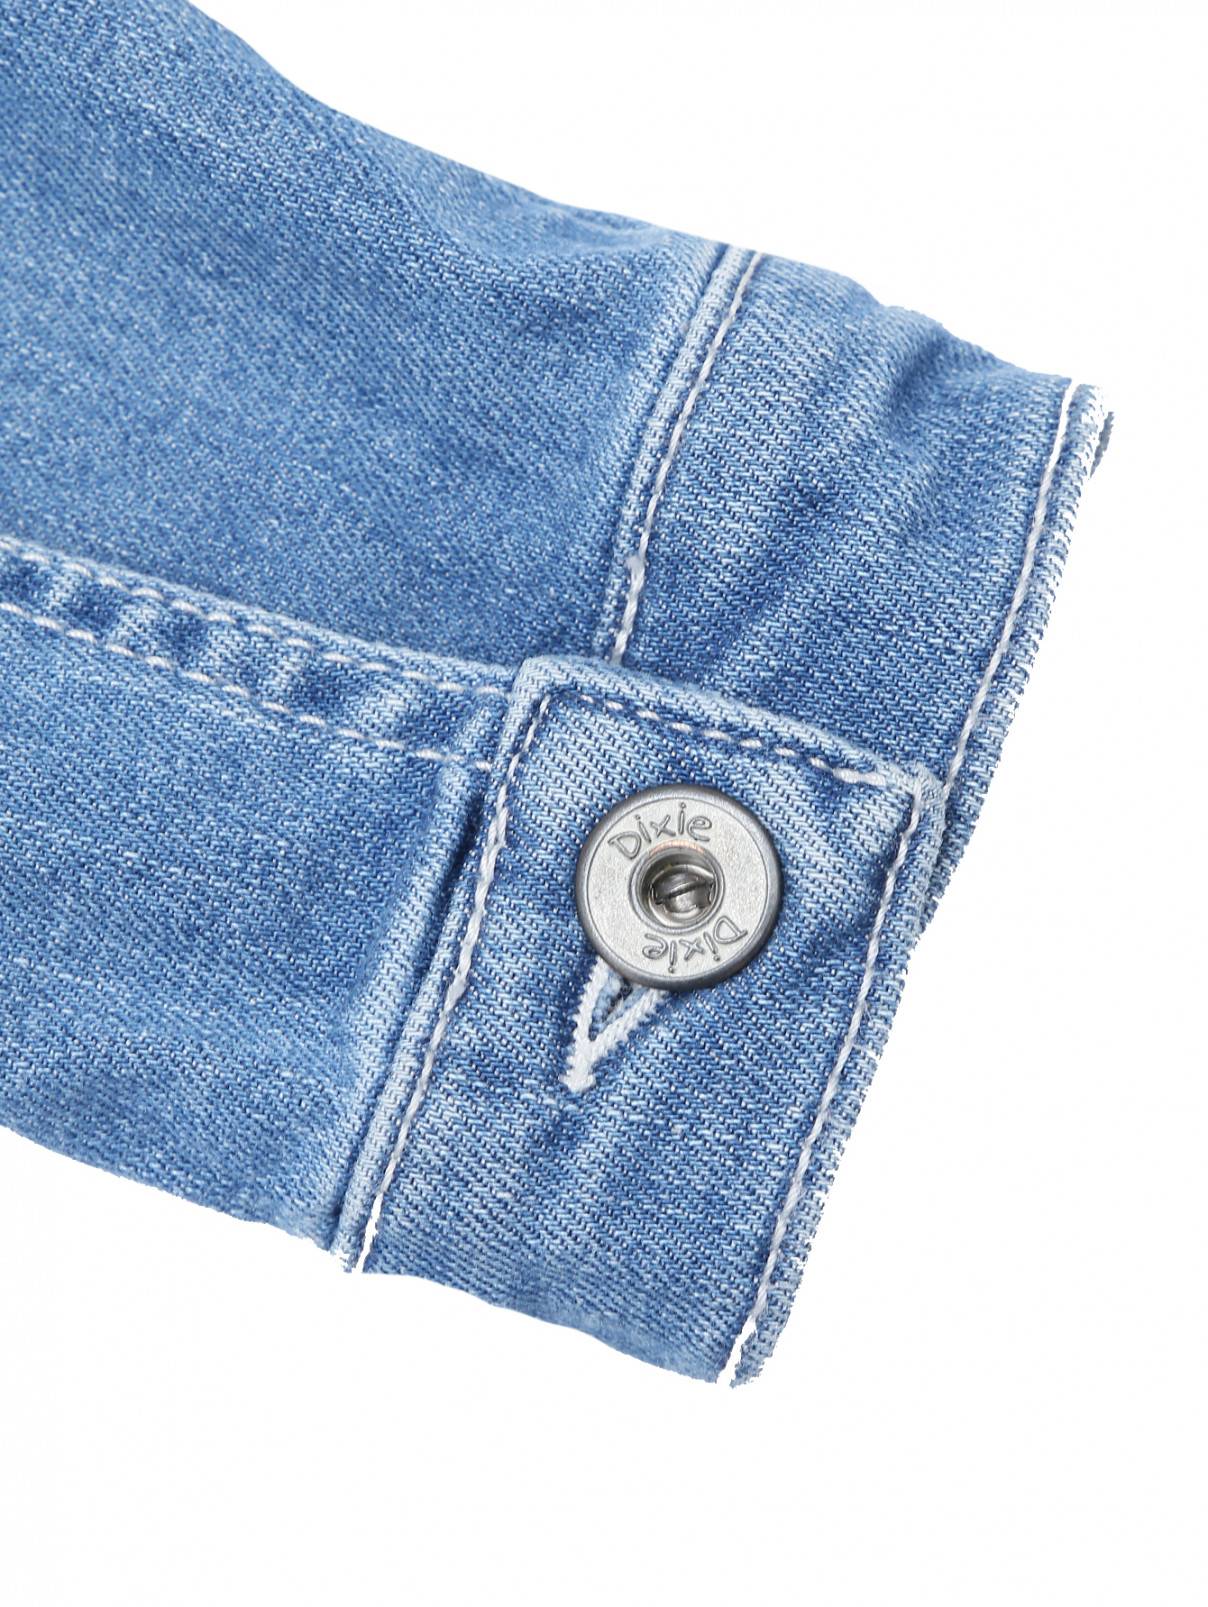 Джинсовая куртка с камнями DIXIE  –  Деталь1  – Цвет:  Синий